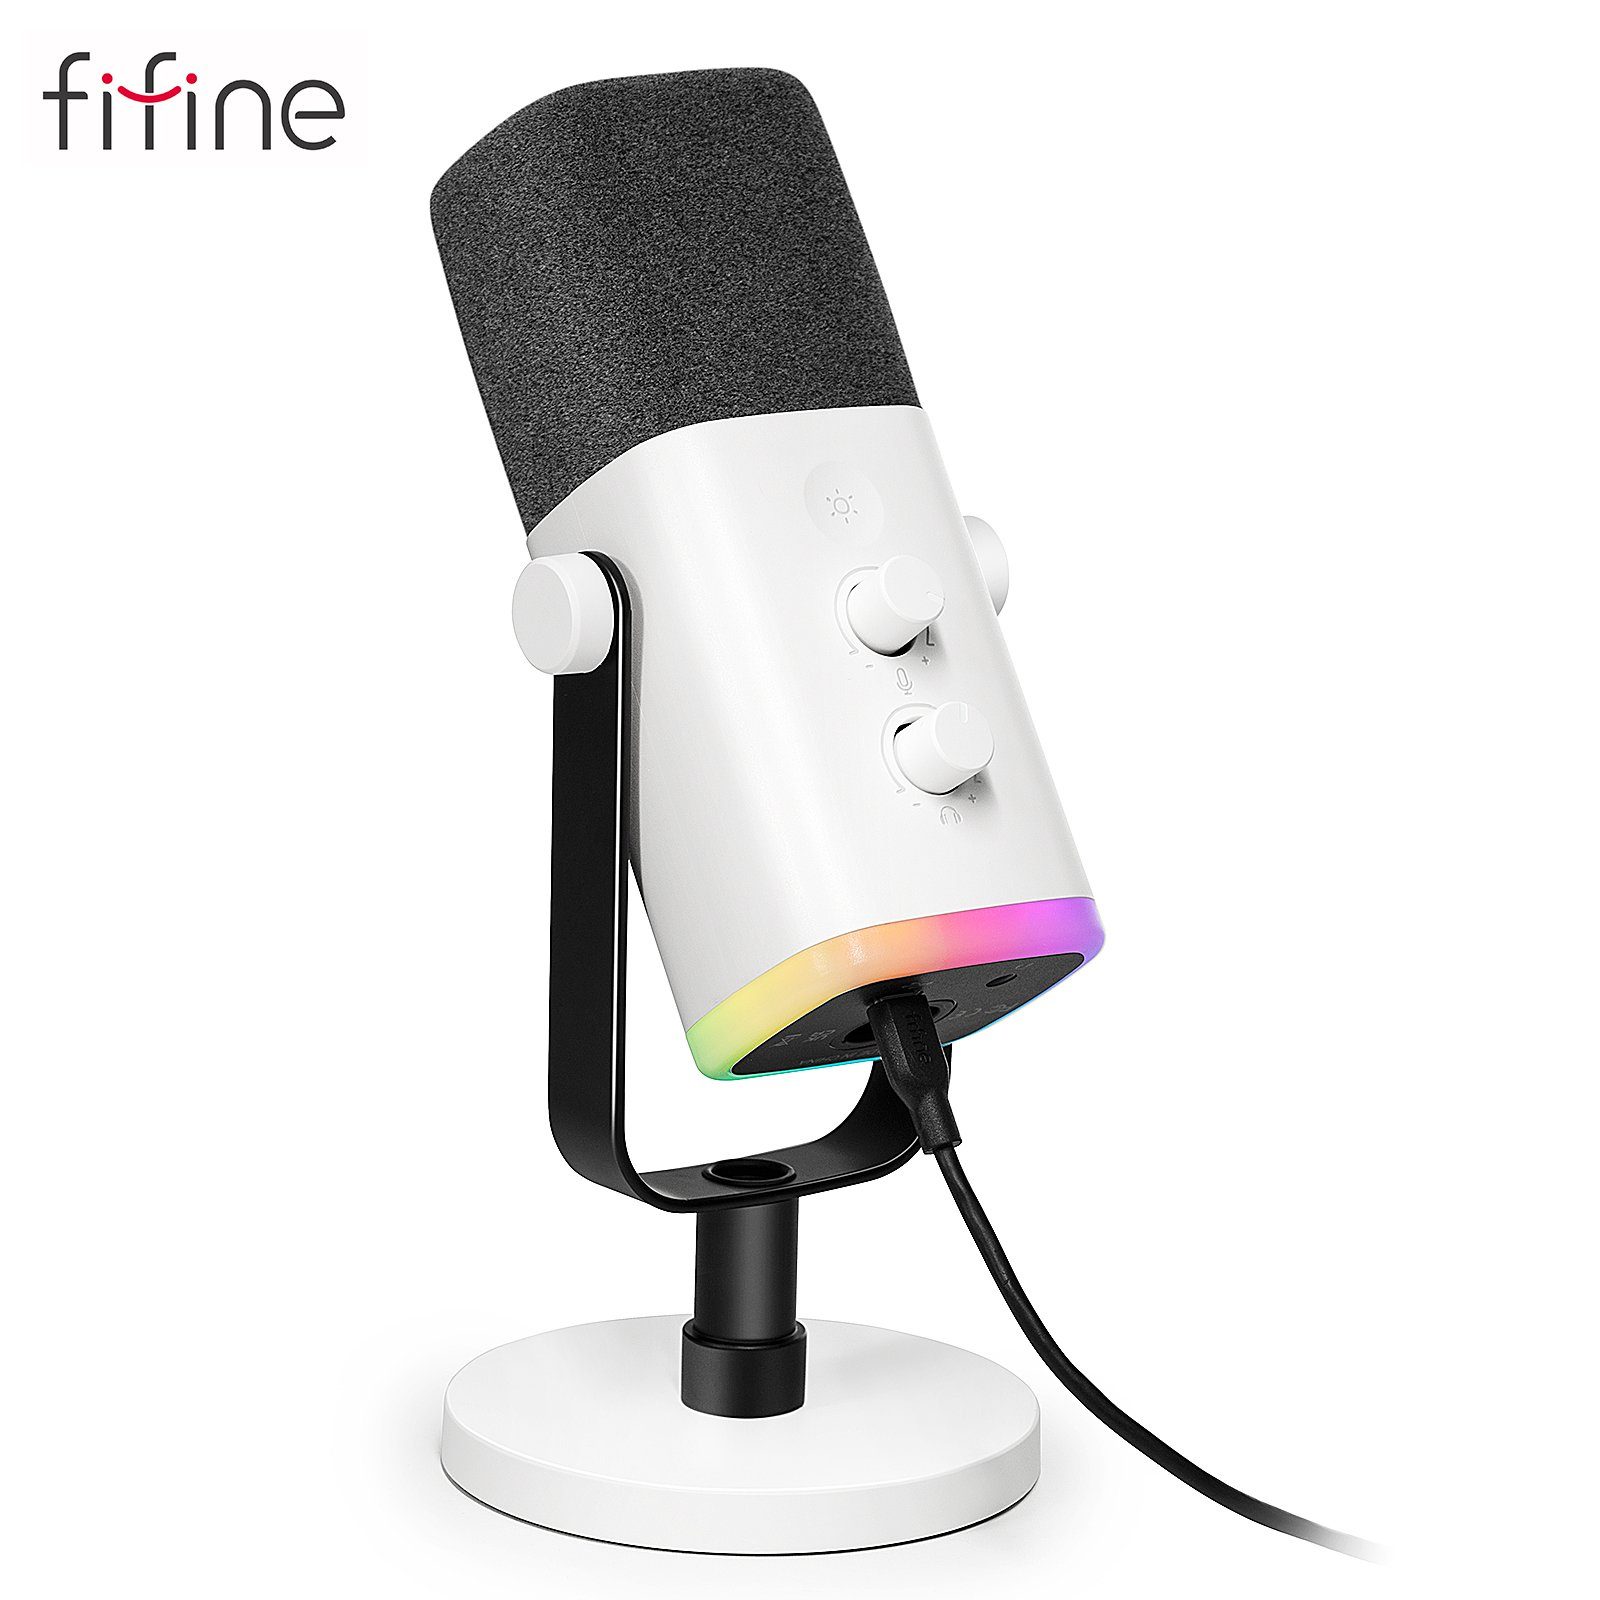 FIFINE Streaming-Mikrofon XLR Mikrofon Dynamisch für Streaming Podcast Studio, USB Microphone, mit Stummschalttaste, für Gaming PC PS4/5 Mac Mixer Soundkarten